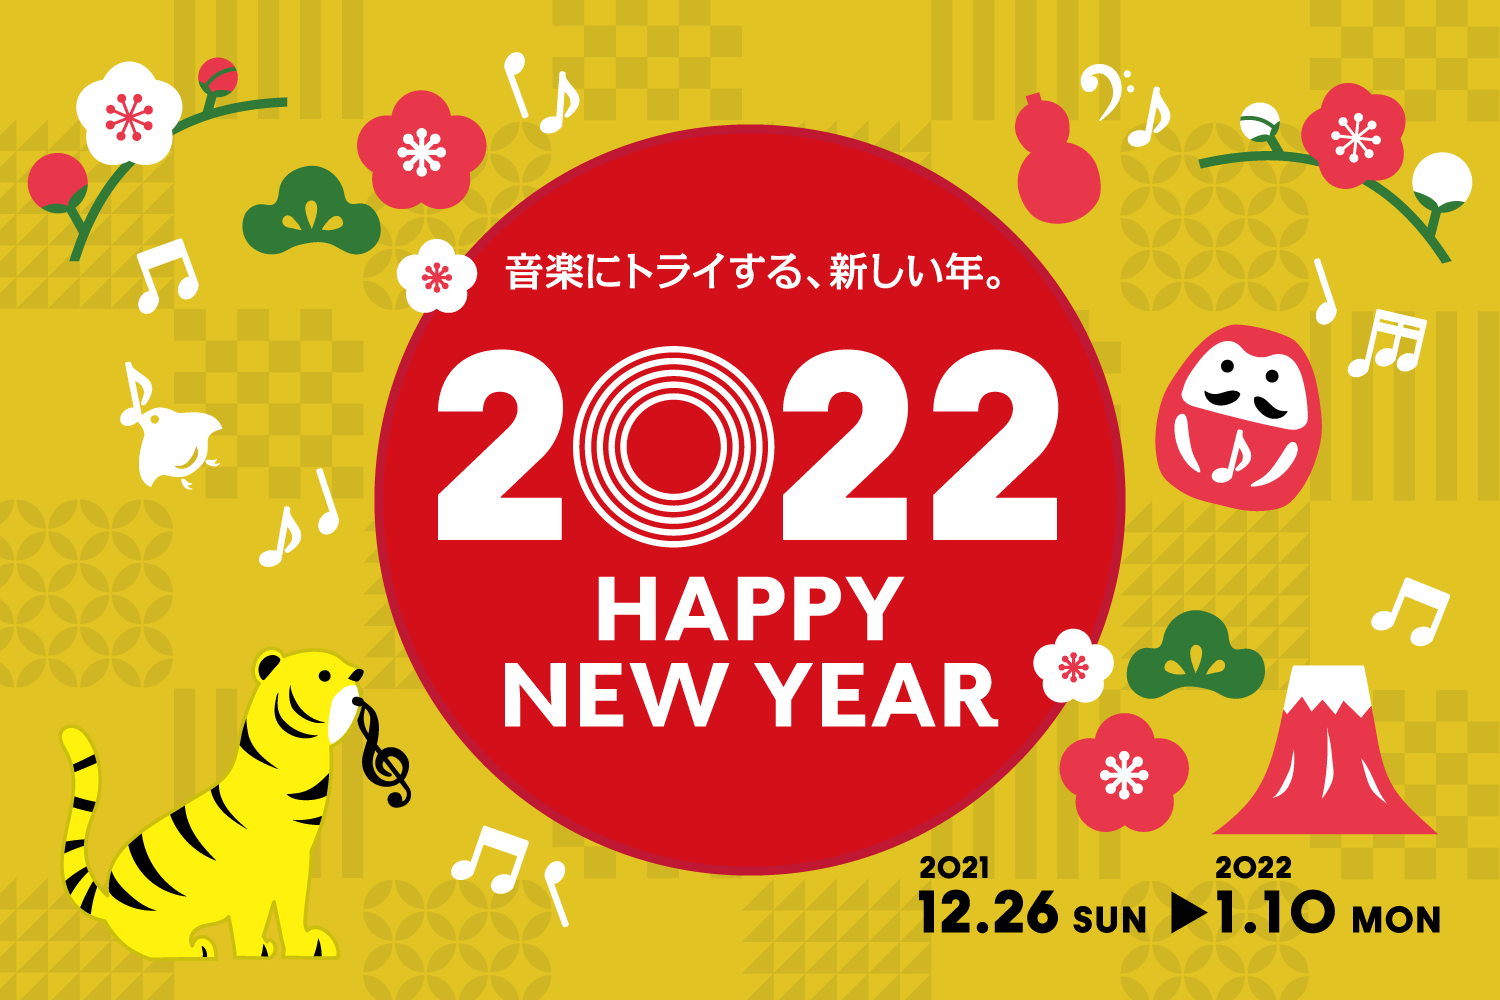 【HAPPY NEW YEAR 2022】お買い得情報|島村楽器立川店